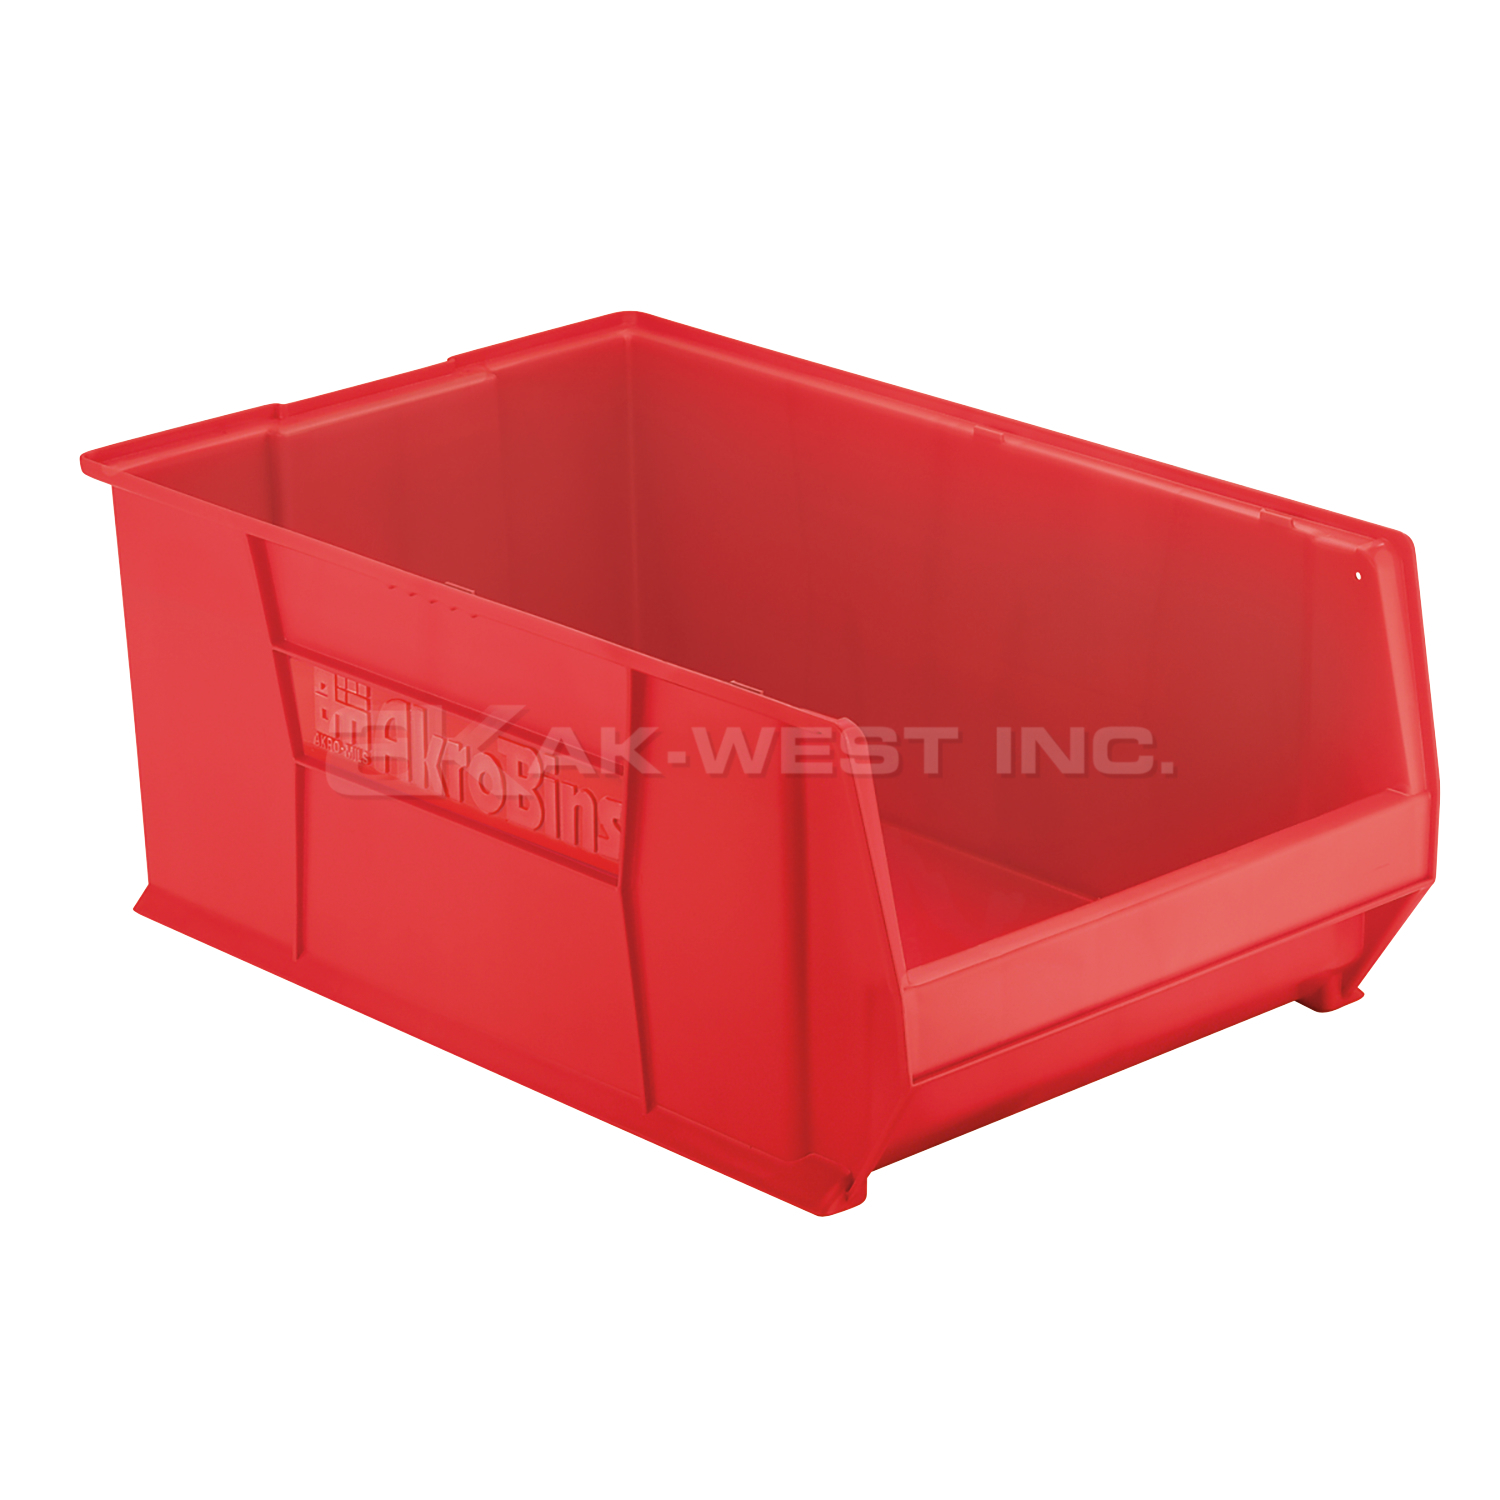 Red, 29-1/4" x 18-3/8" x 12" Stacking Shelf Bin (1 Per Carton)